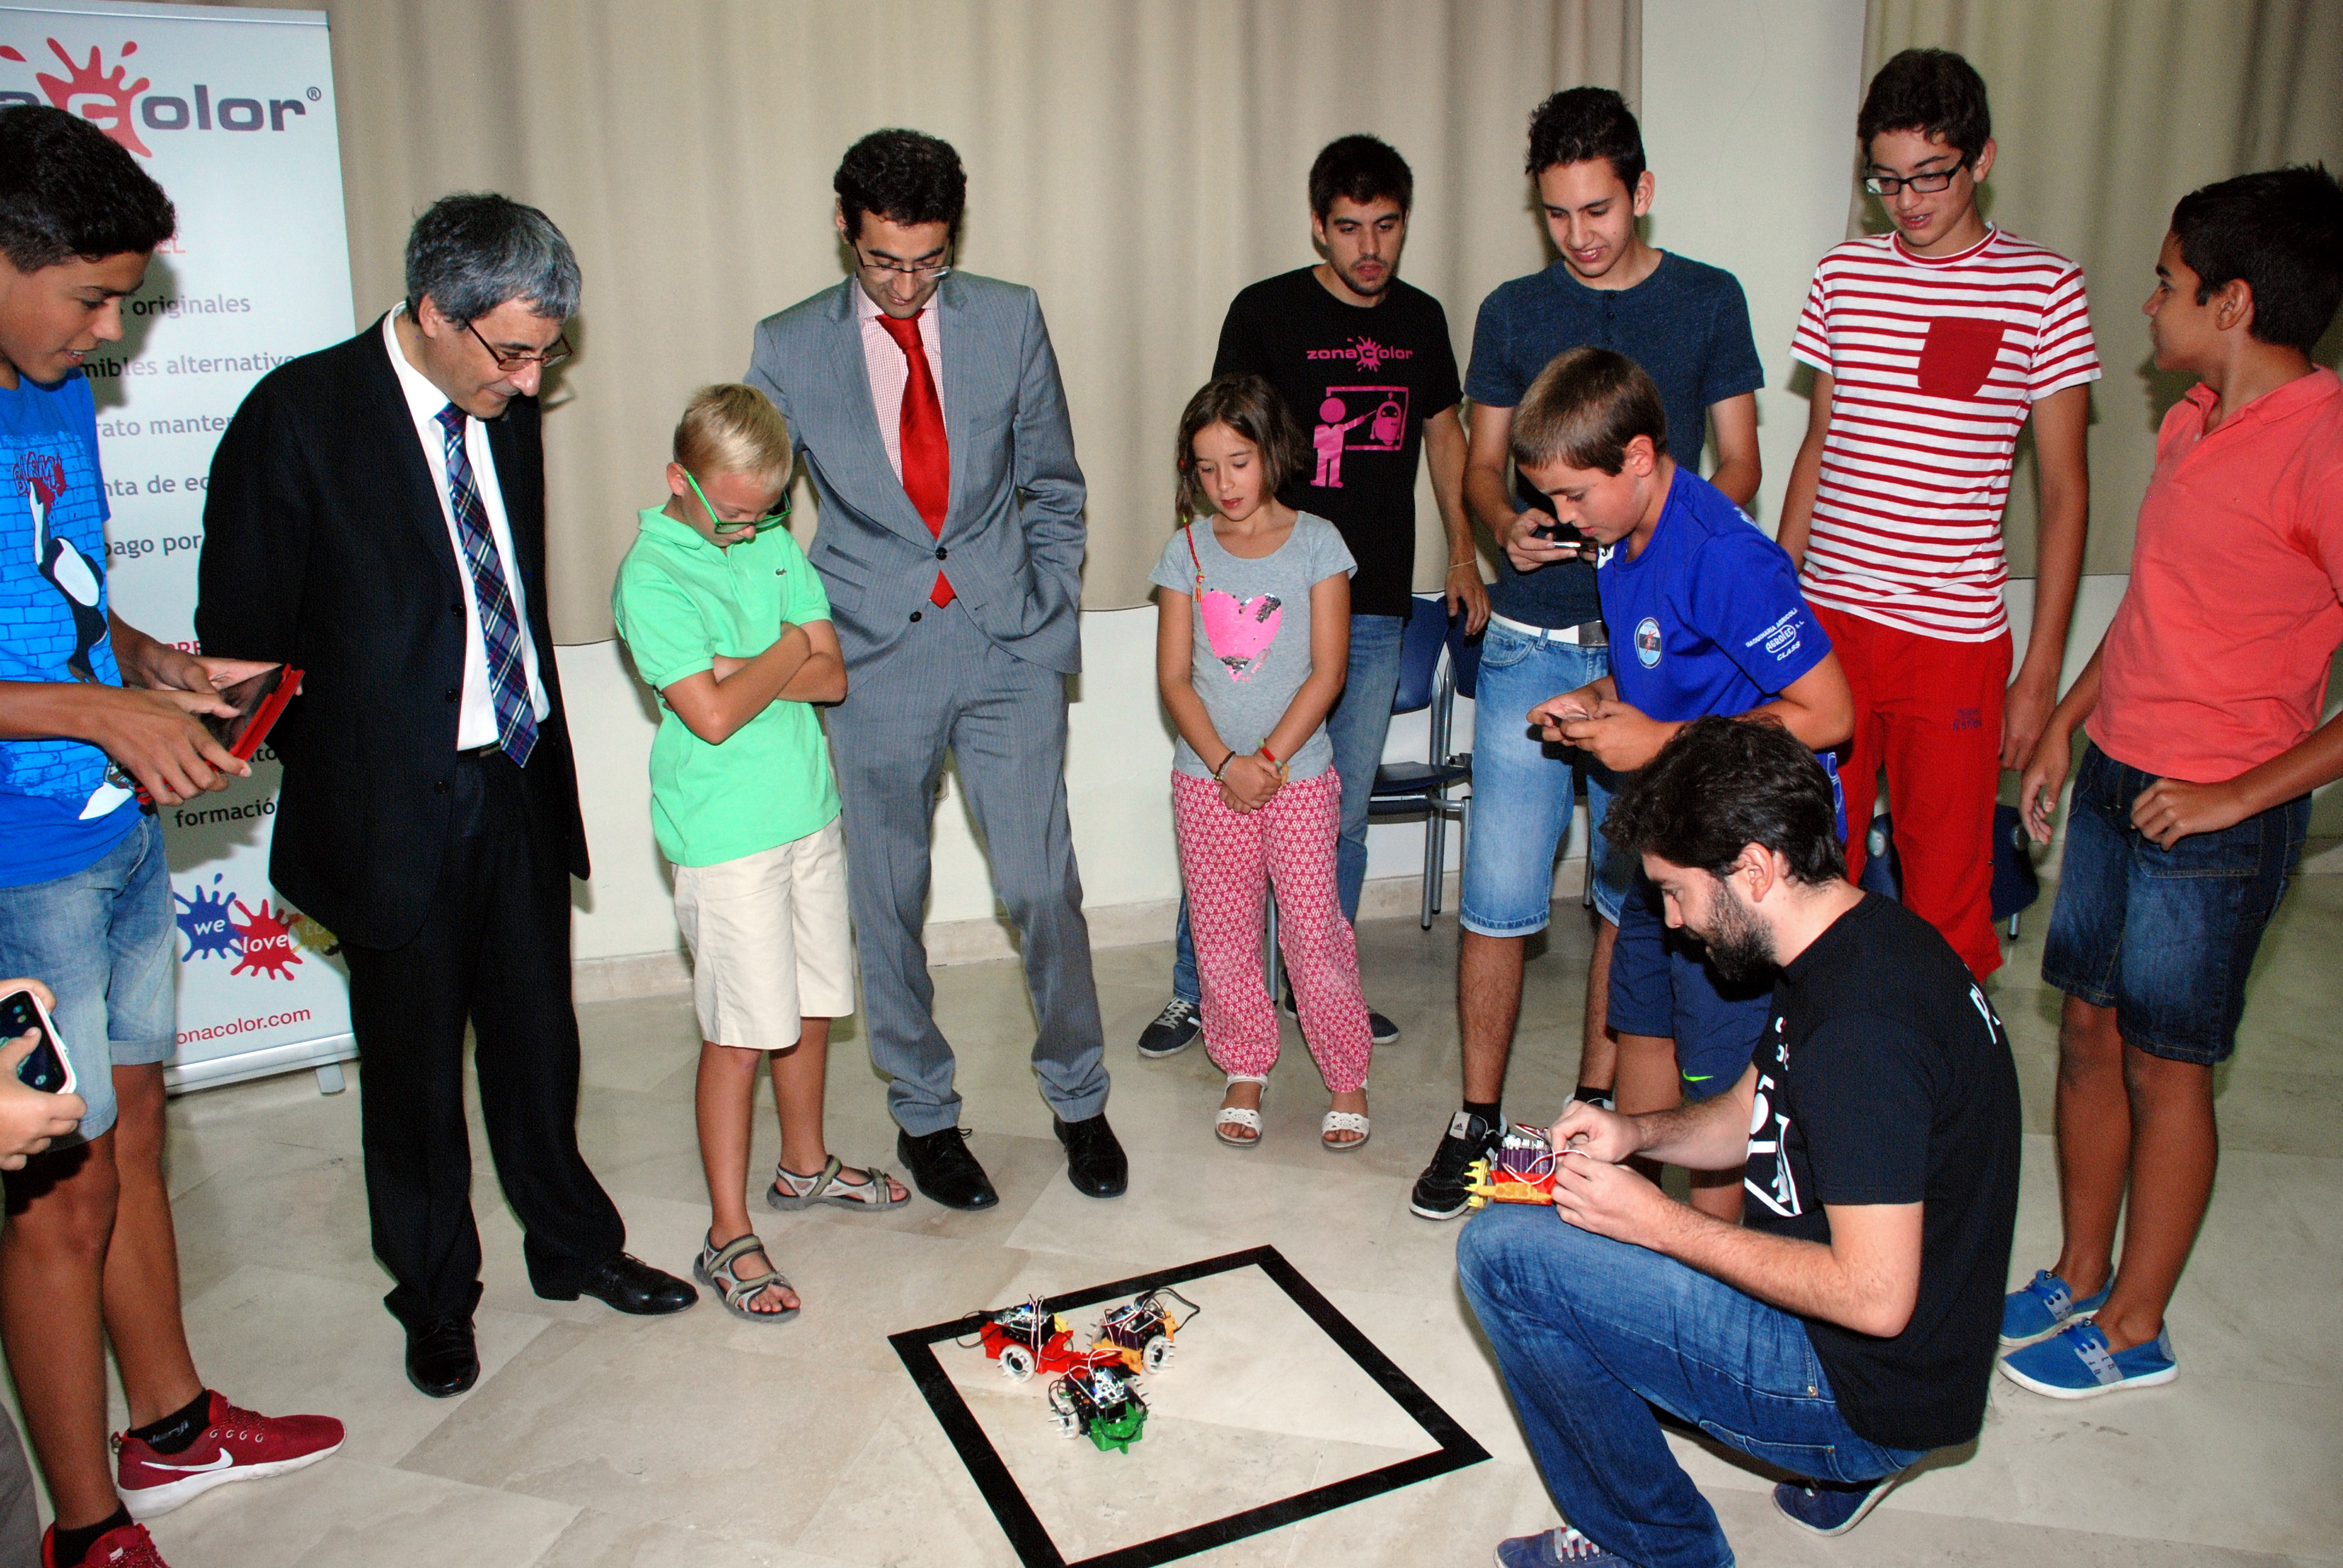 El vicerrector de Promoción y Coordinación visita el ‘Robotics Summer Camp’, organizado por Cursos Internacionales